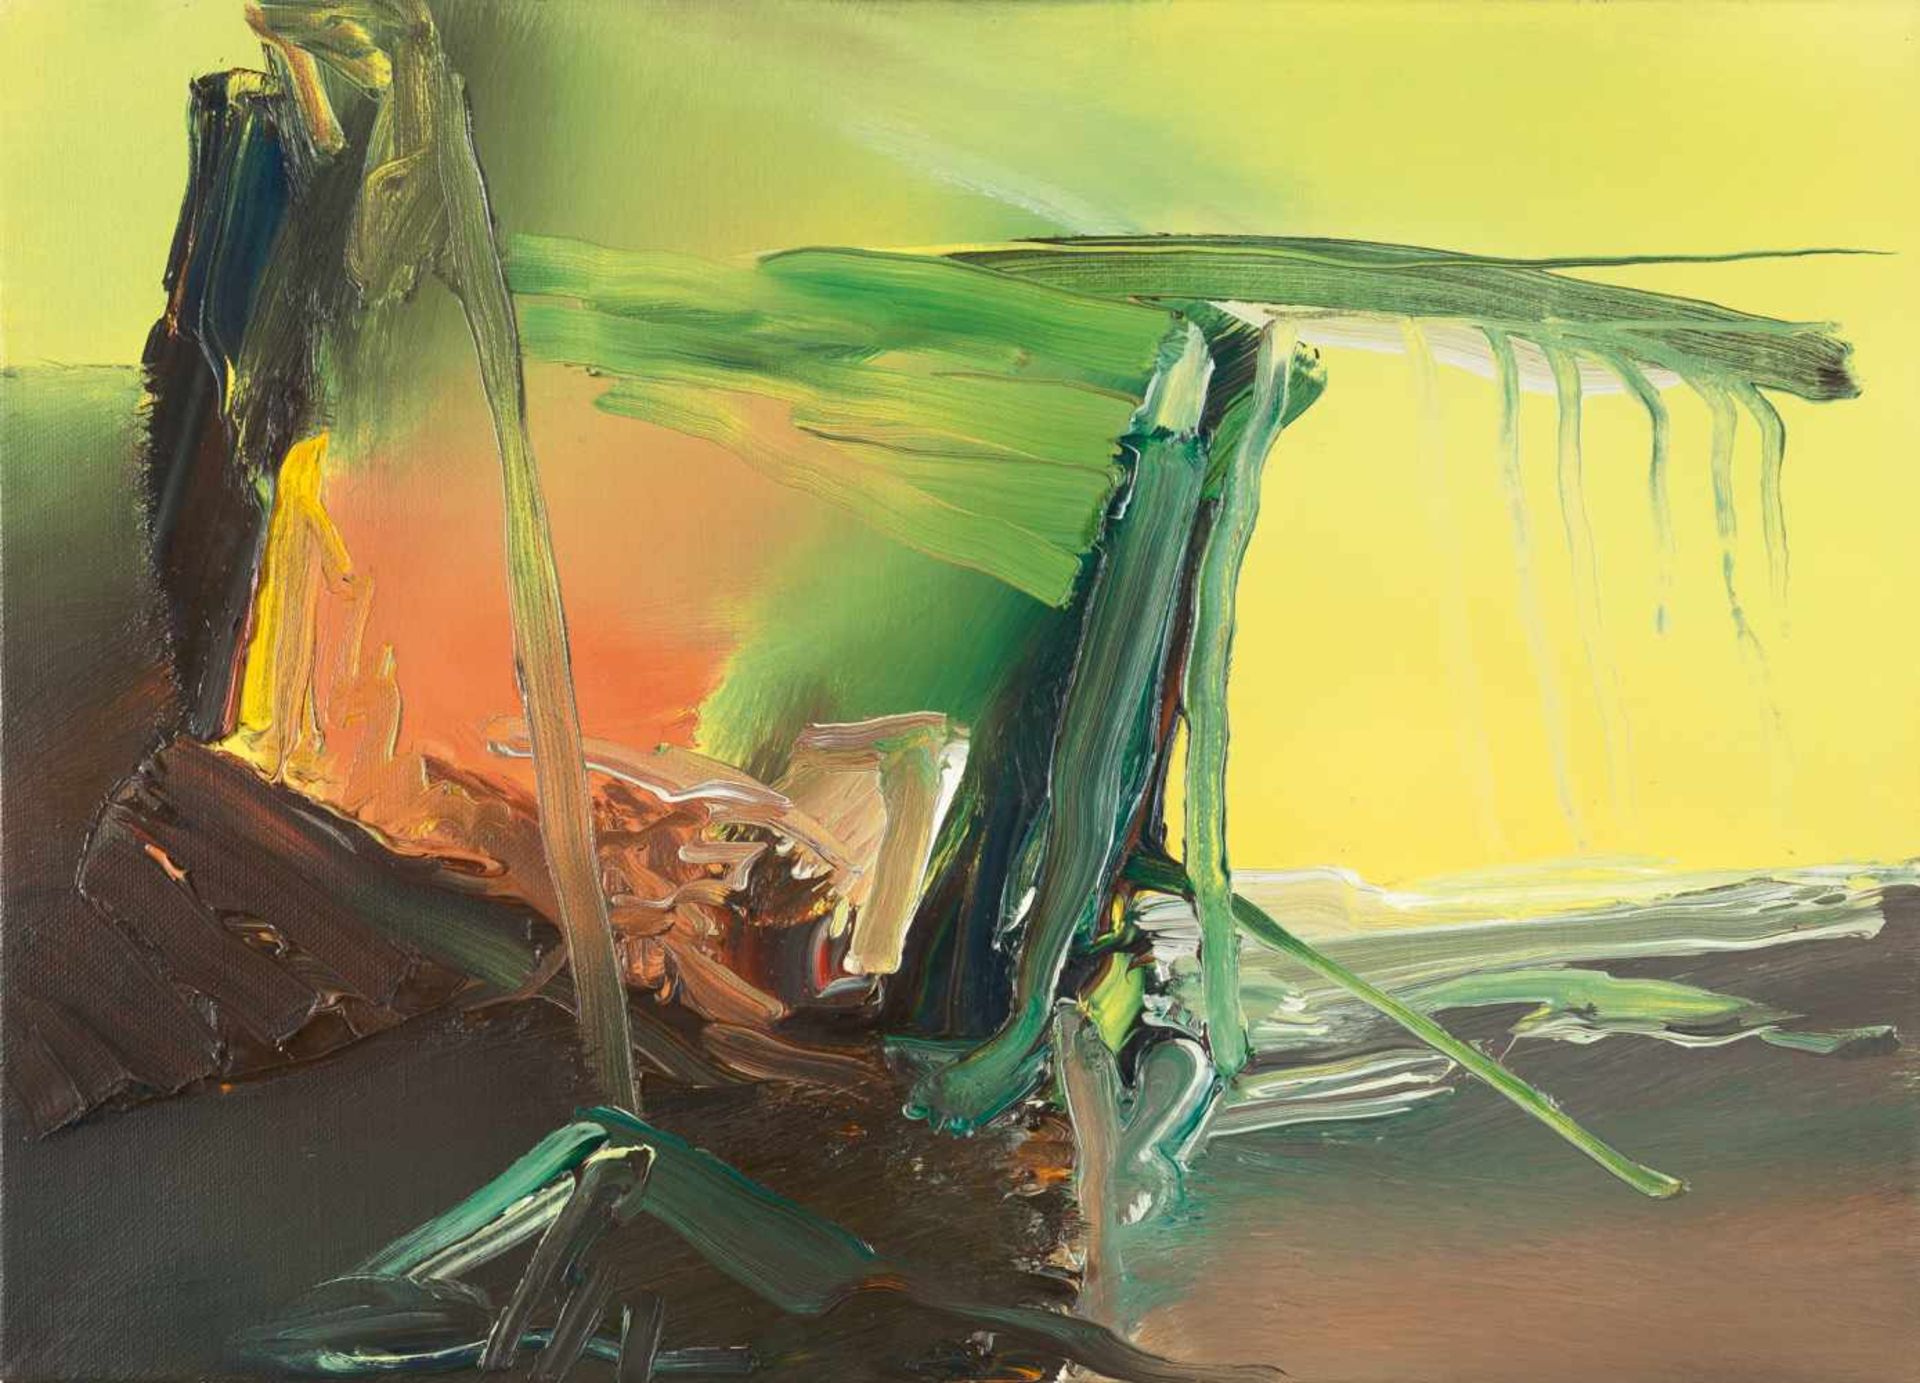 GERHARD RICHTER - Abstraktes Bild (585-3) Öl auf Leinwand. 1985. Ca. 52 x 72 cm. Verso auf der